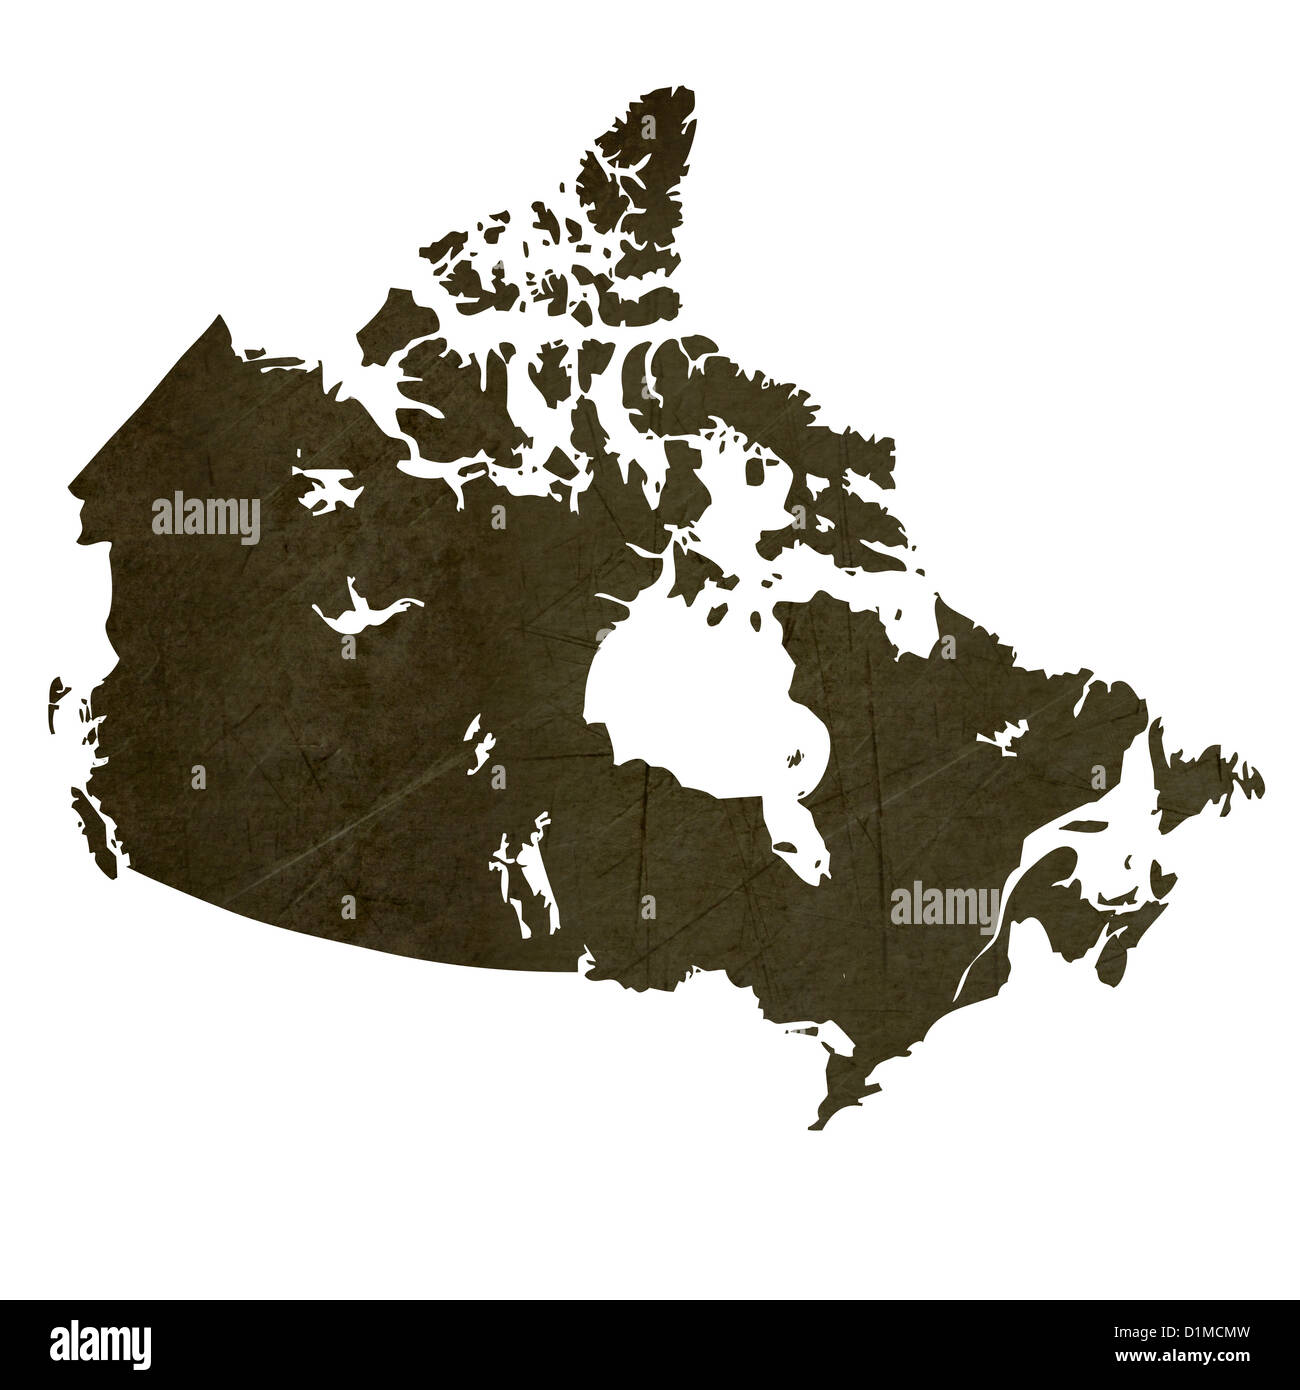 Dunkle Silhouette und strukturierte Karte von Kanada isoliert auf weißem Hintergrund. Stockfoto